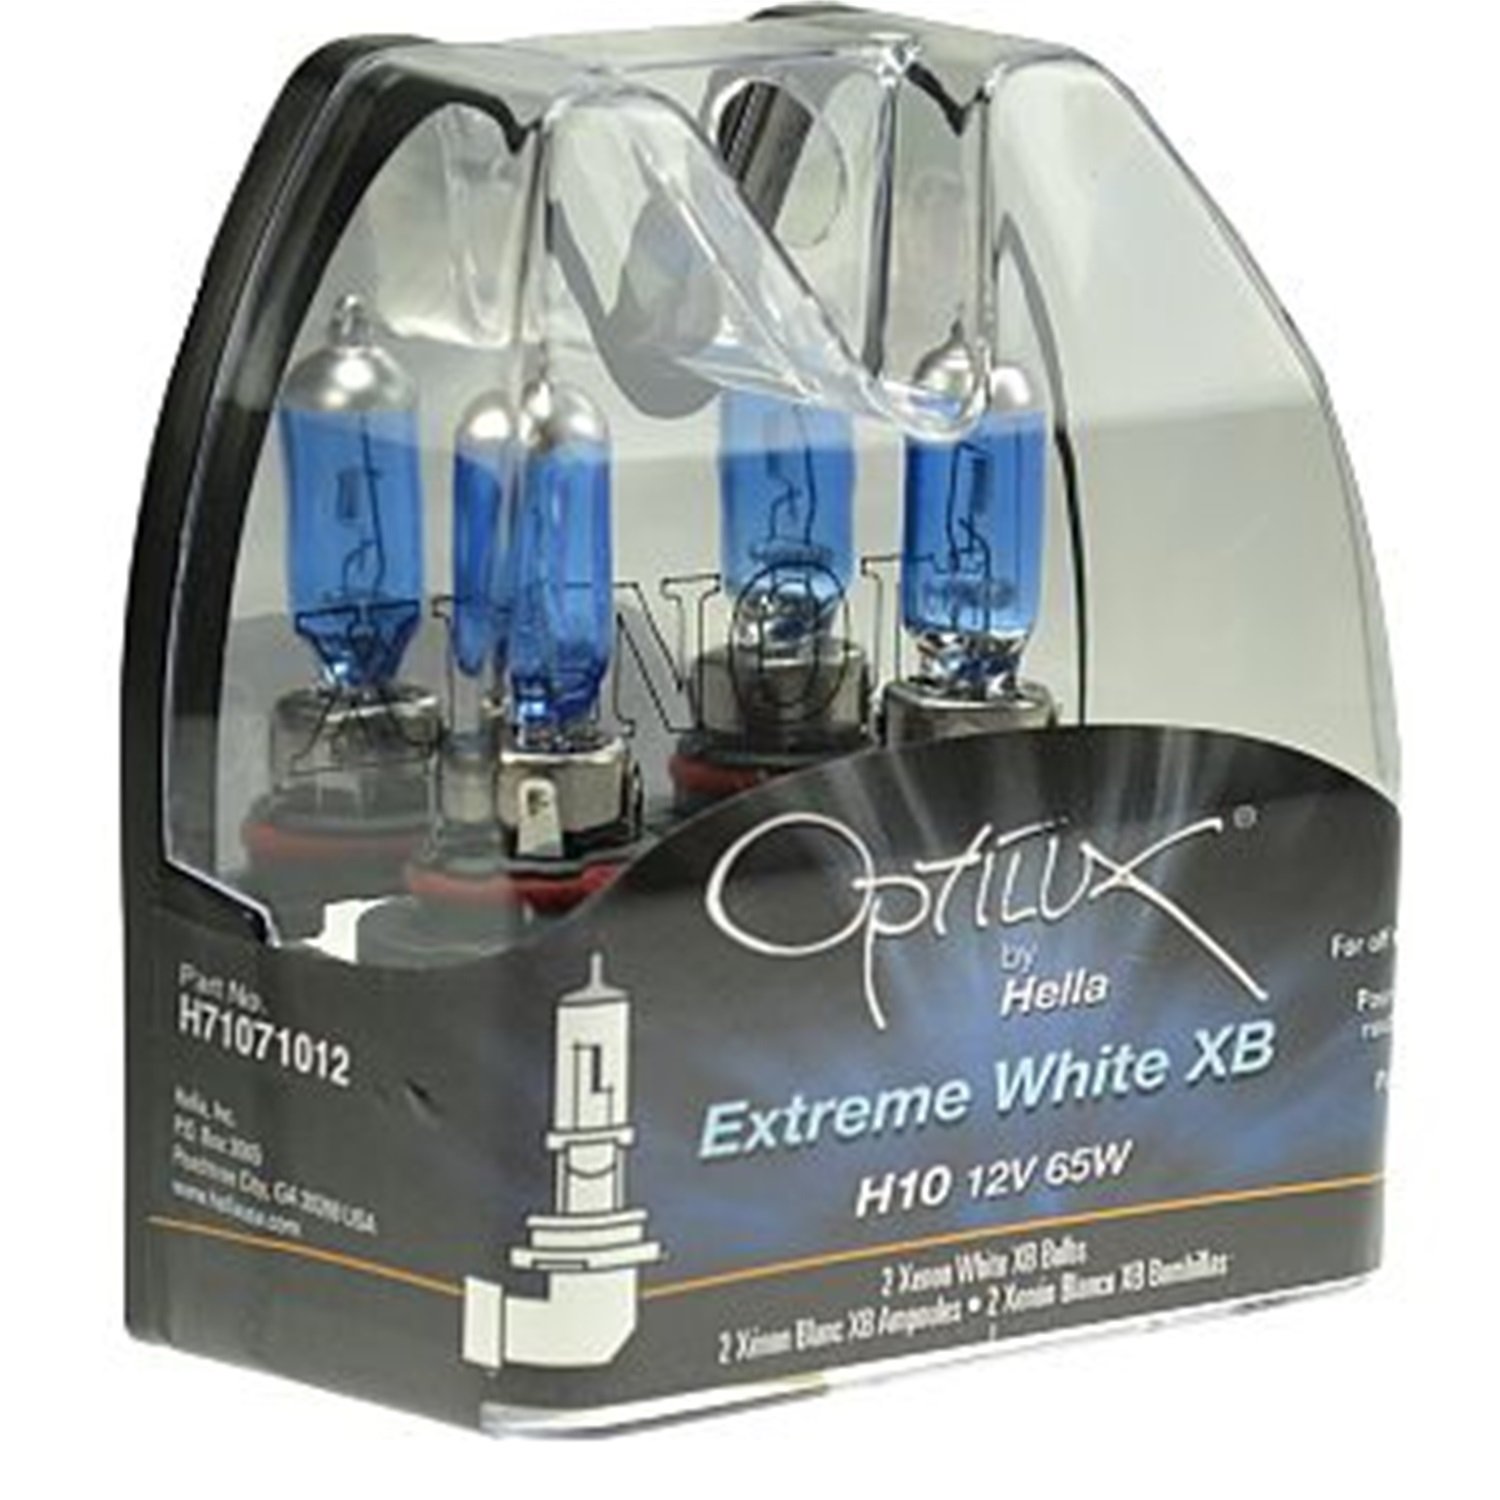 Optilux Extreme White XB Bulbs Bulb Type: H10